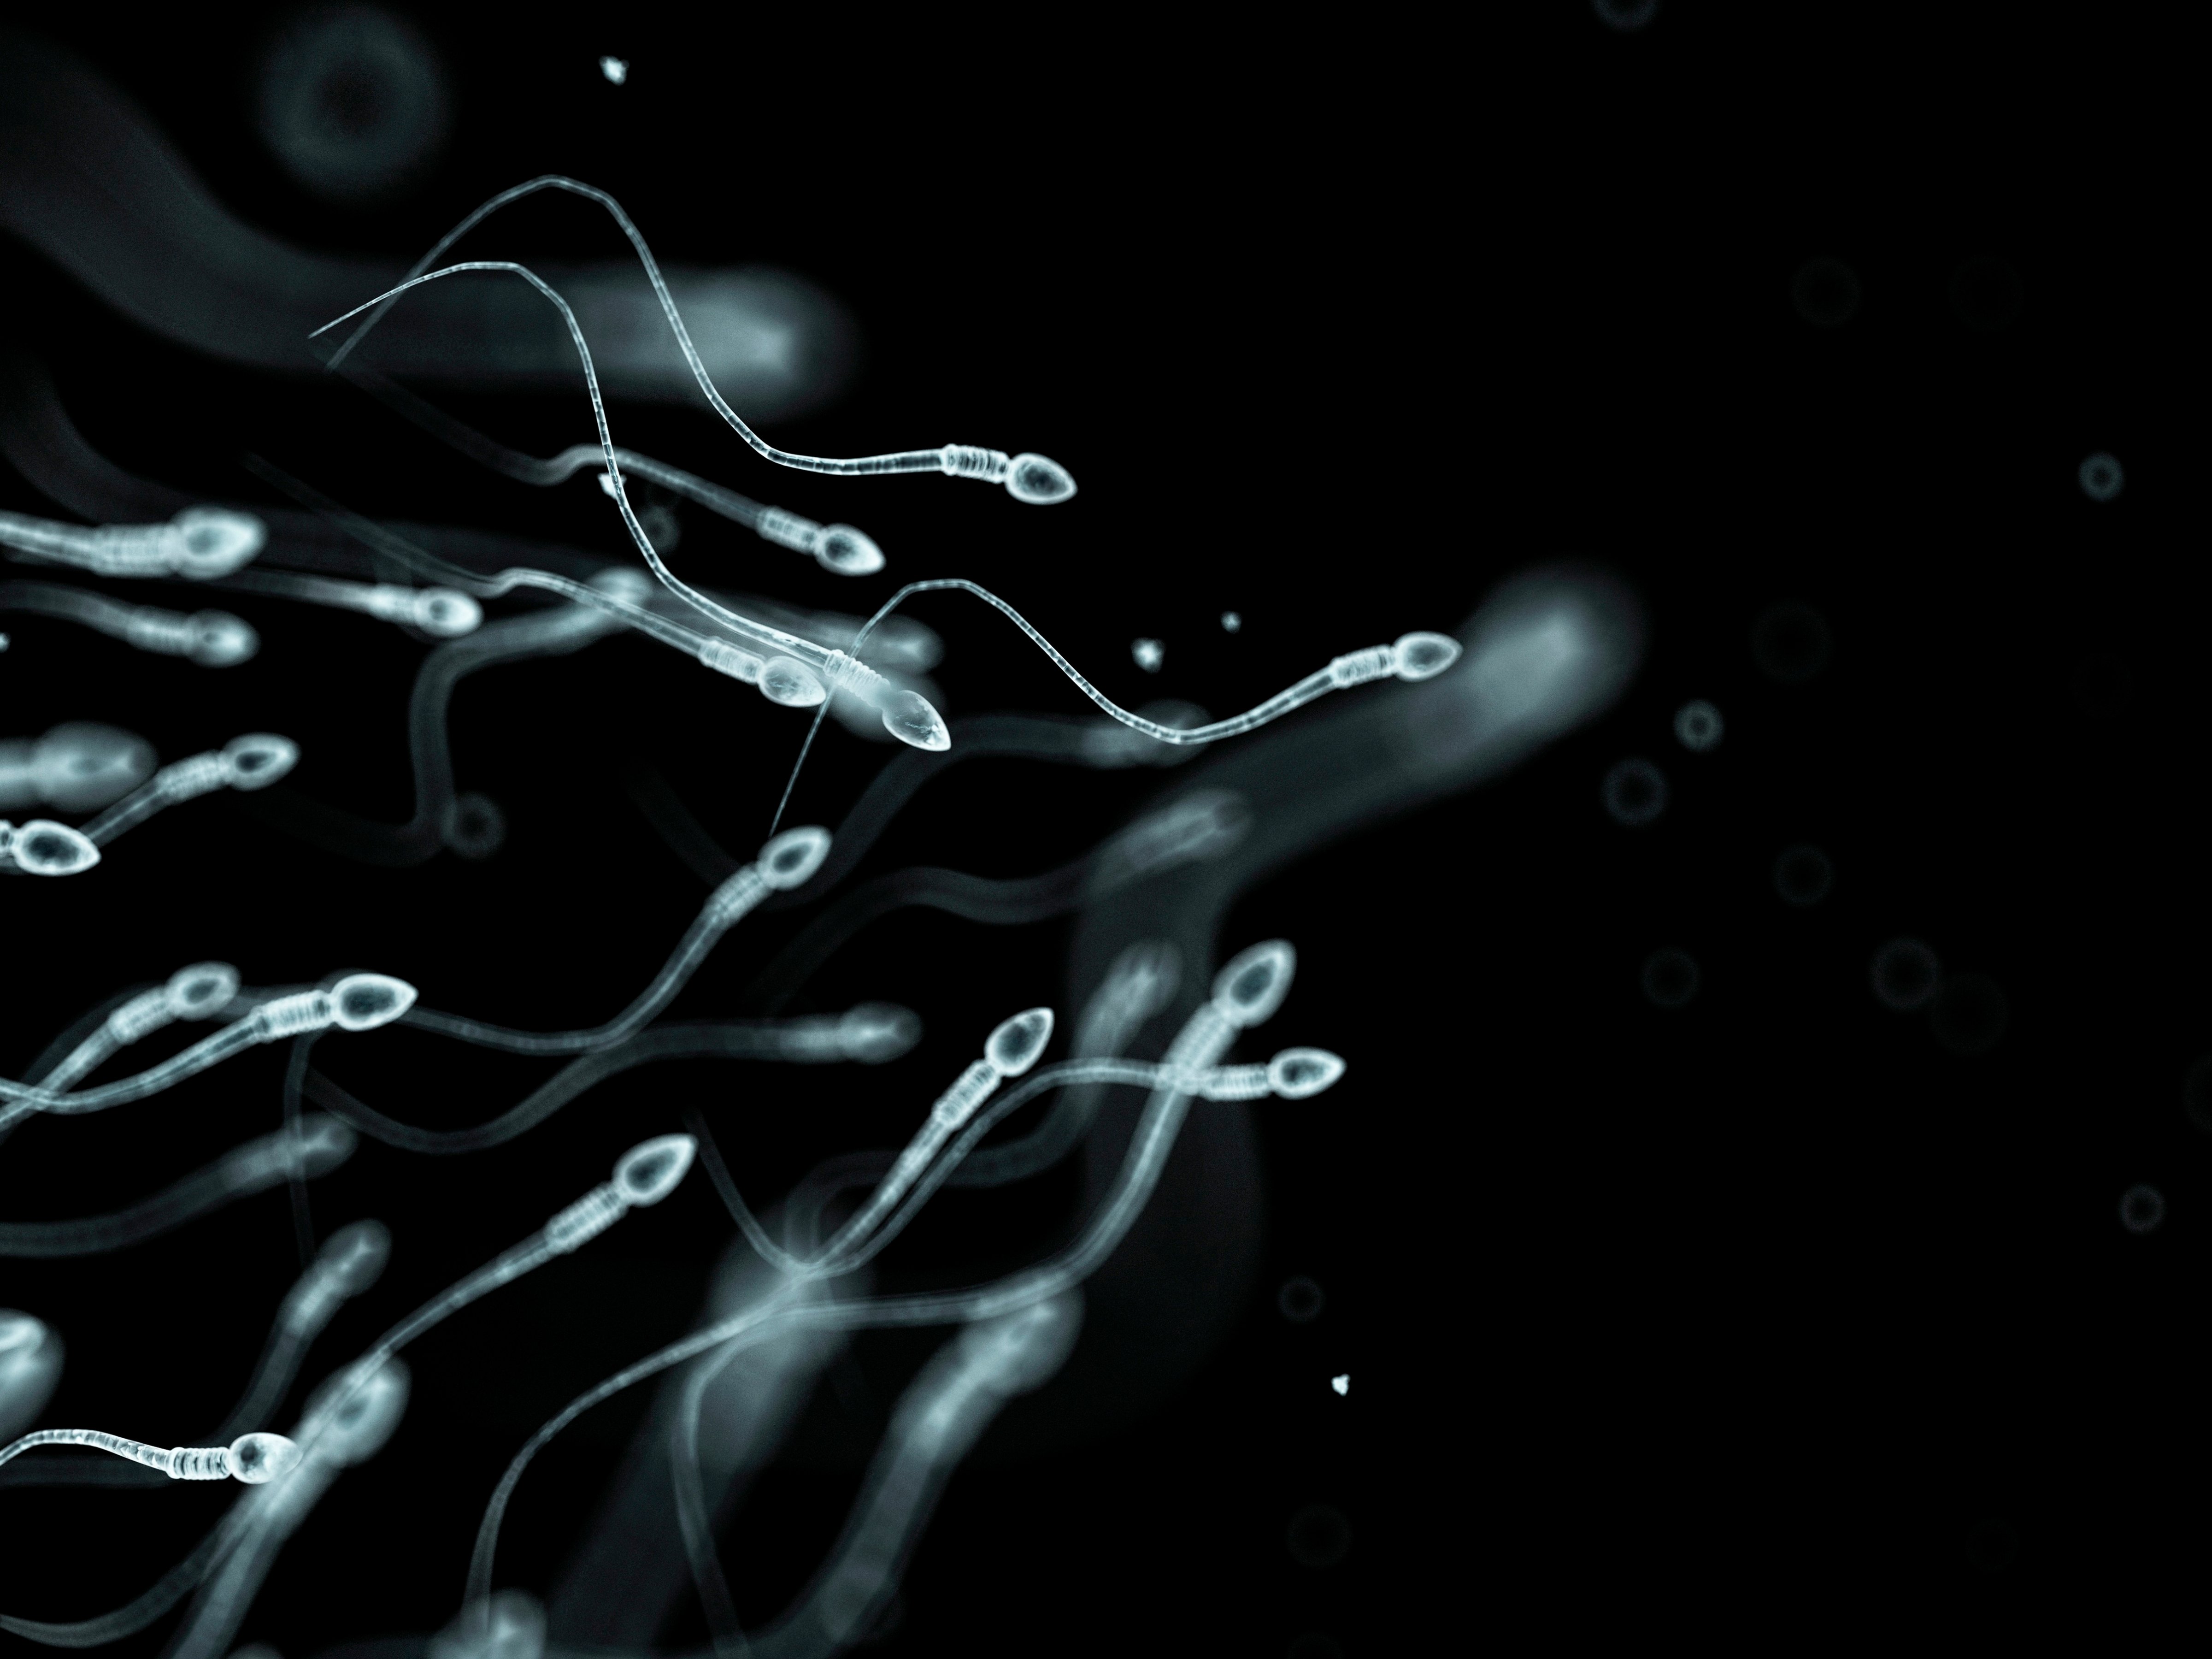 Human sperm, artwork